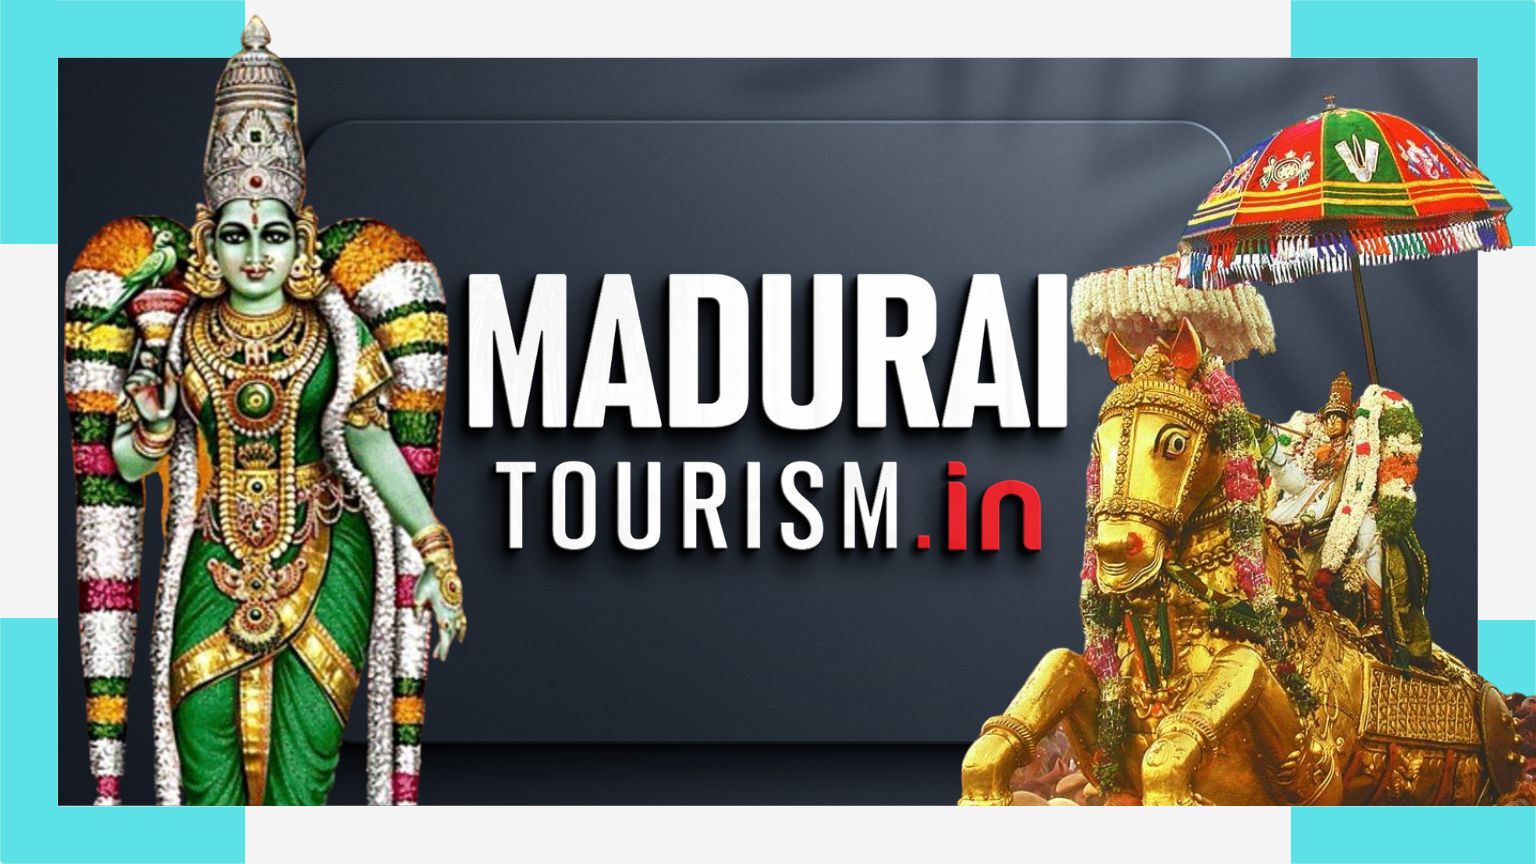 Travels in Madurai